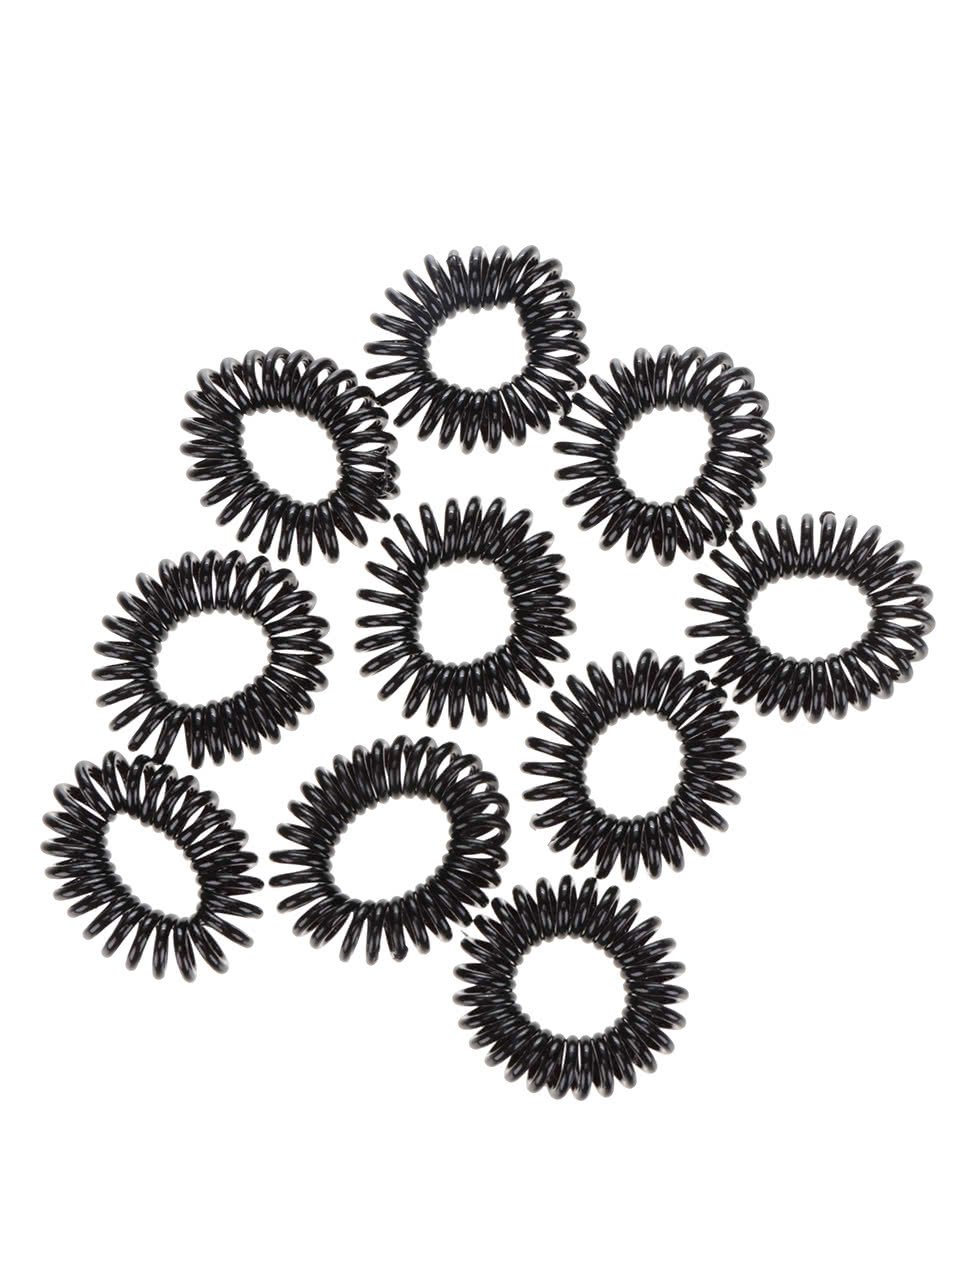 Sada deseti černých spirálových gumiček Pieces Spiral